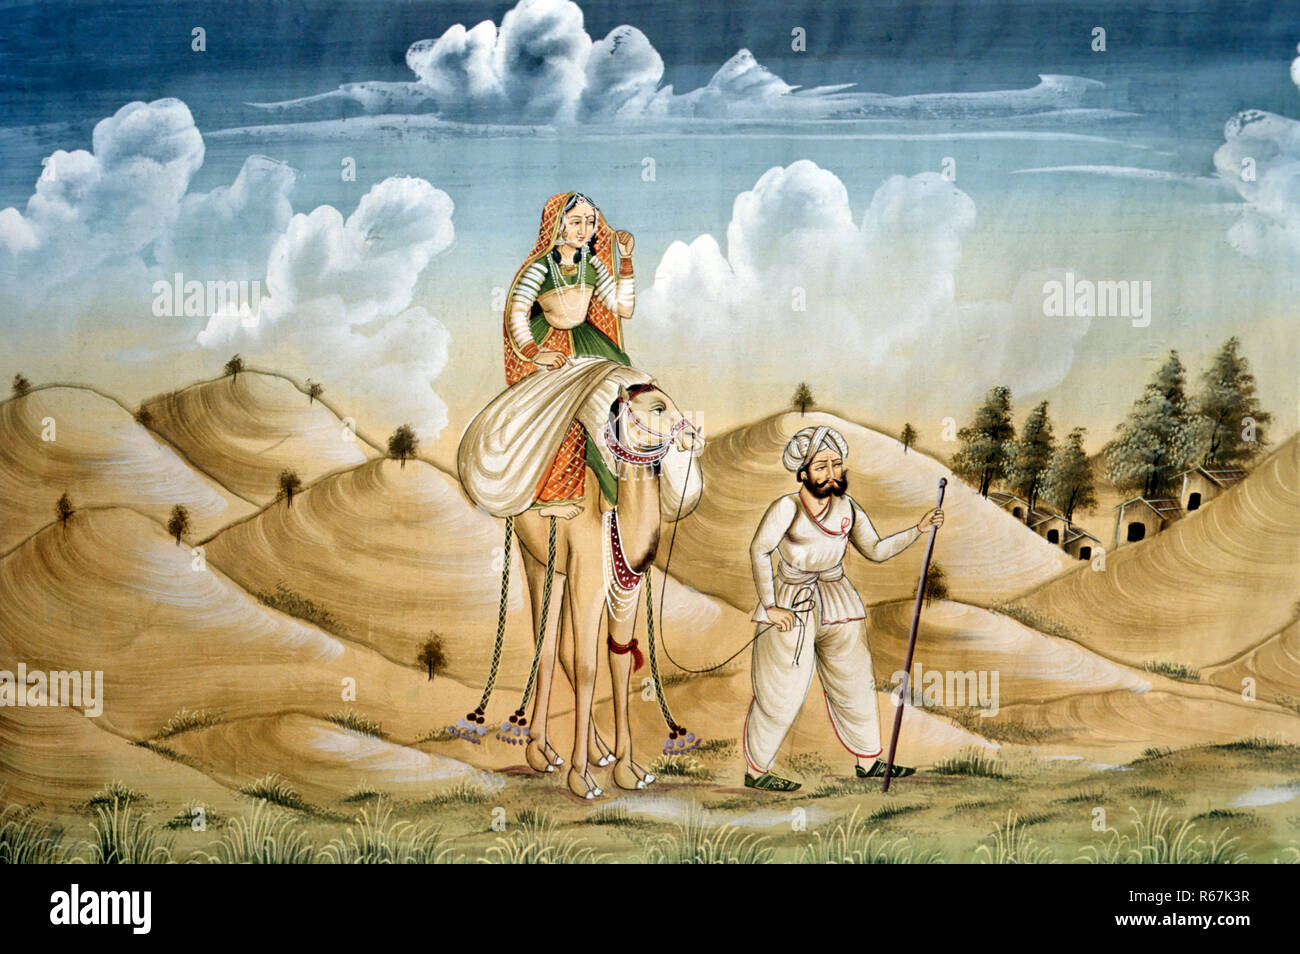 Peinture miniature sur soie, femme assise sur chameau, chameau dans le désert, voyageur solitaire, Rajasthan, Inde, Peinture indienne Banque D'Images